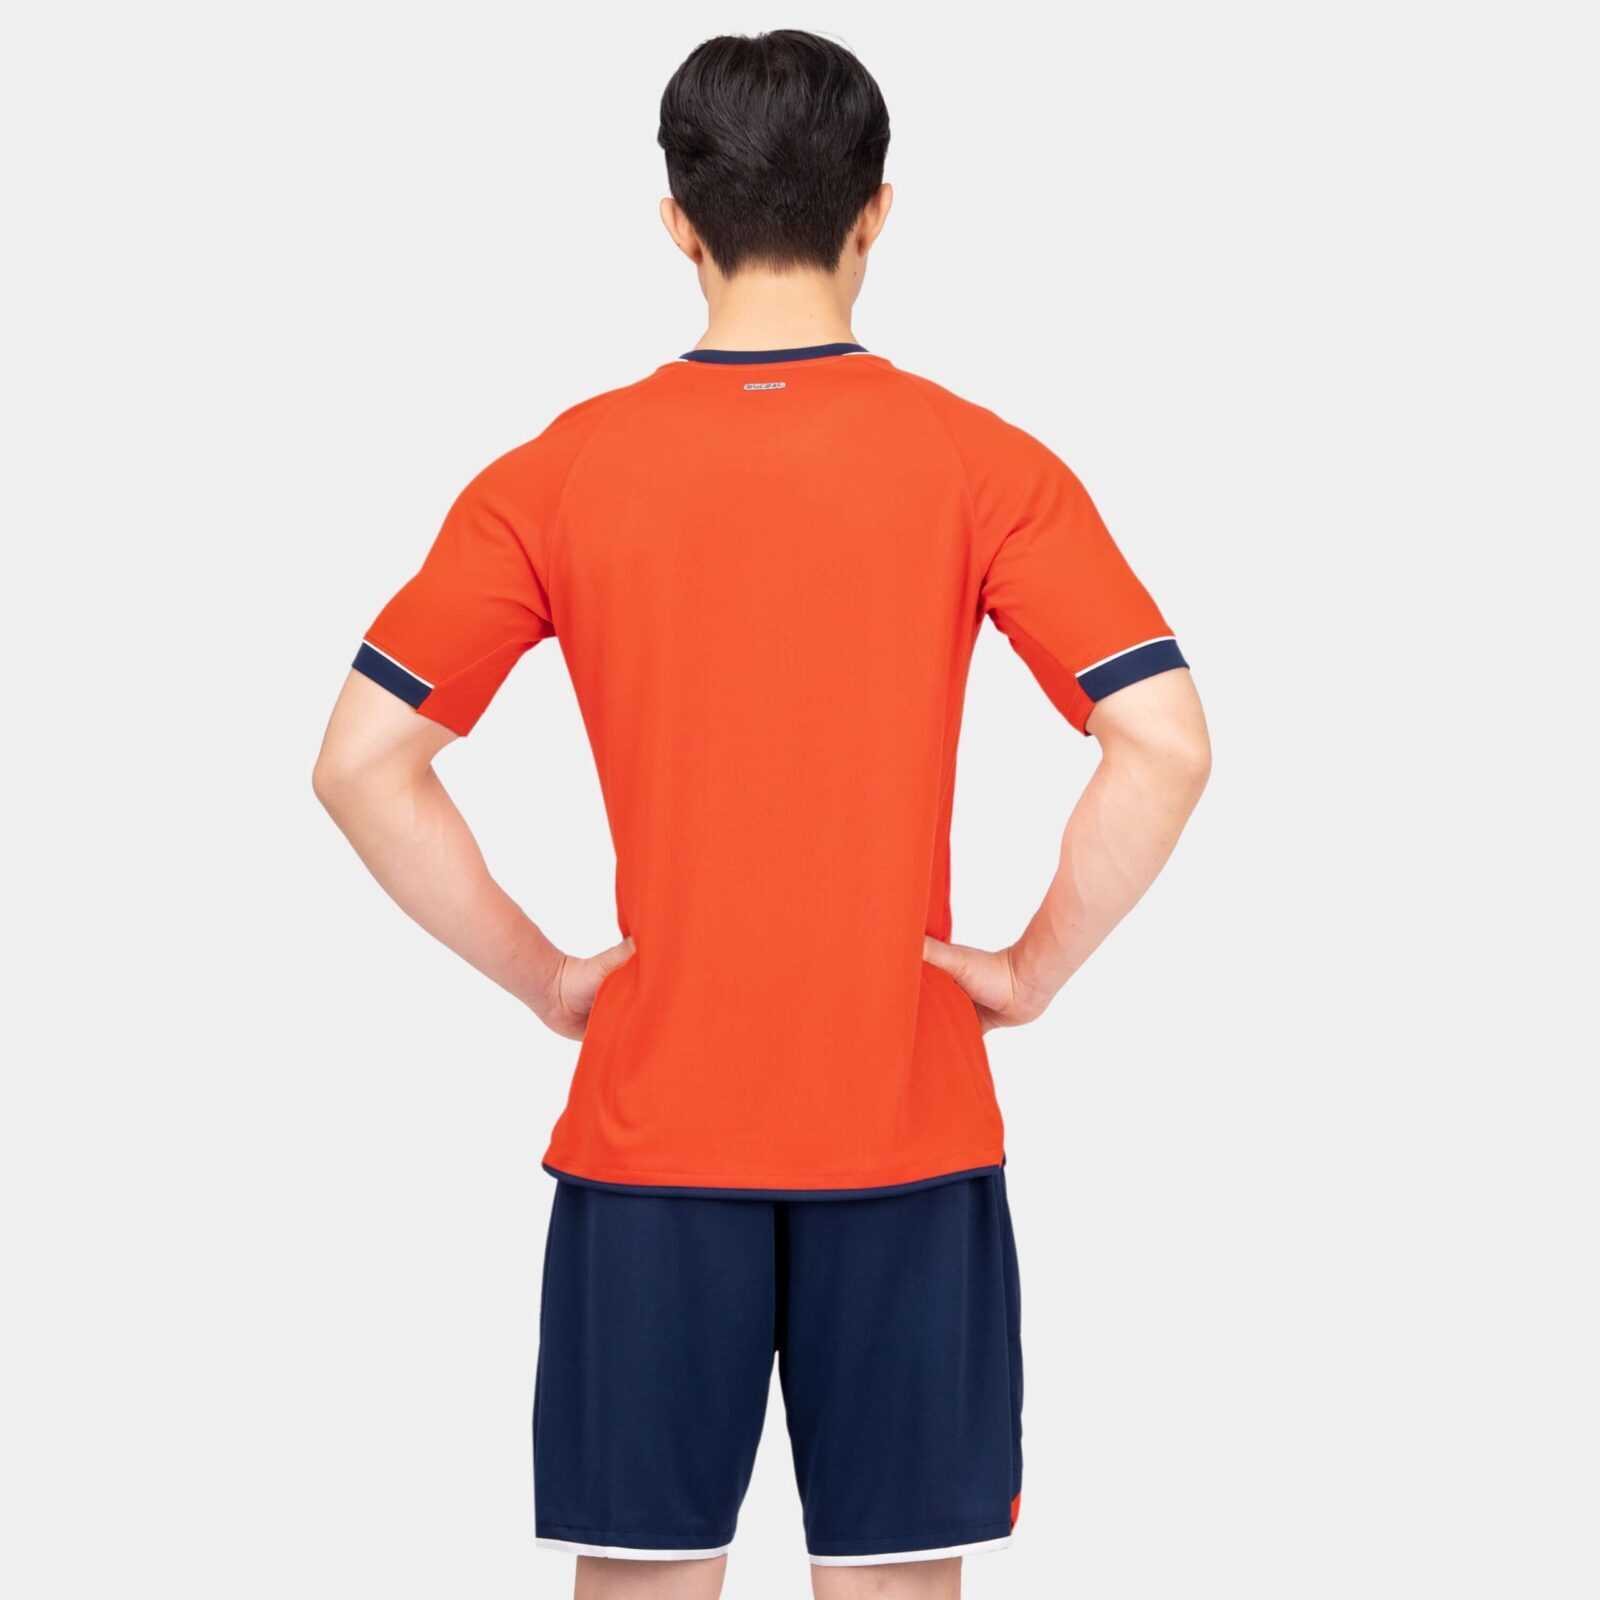 Bộ quần áo bóng đá phủi thiết kế chính hàng Bulbal Zenith nhiều màu xang biển navy 1